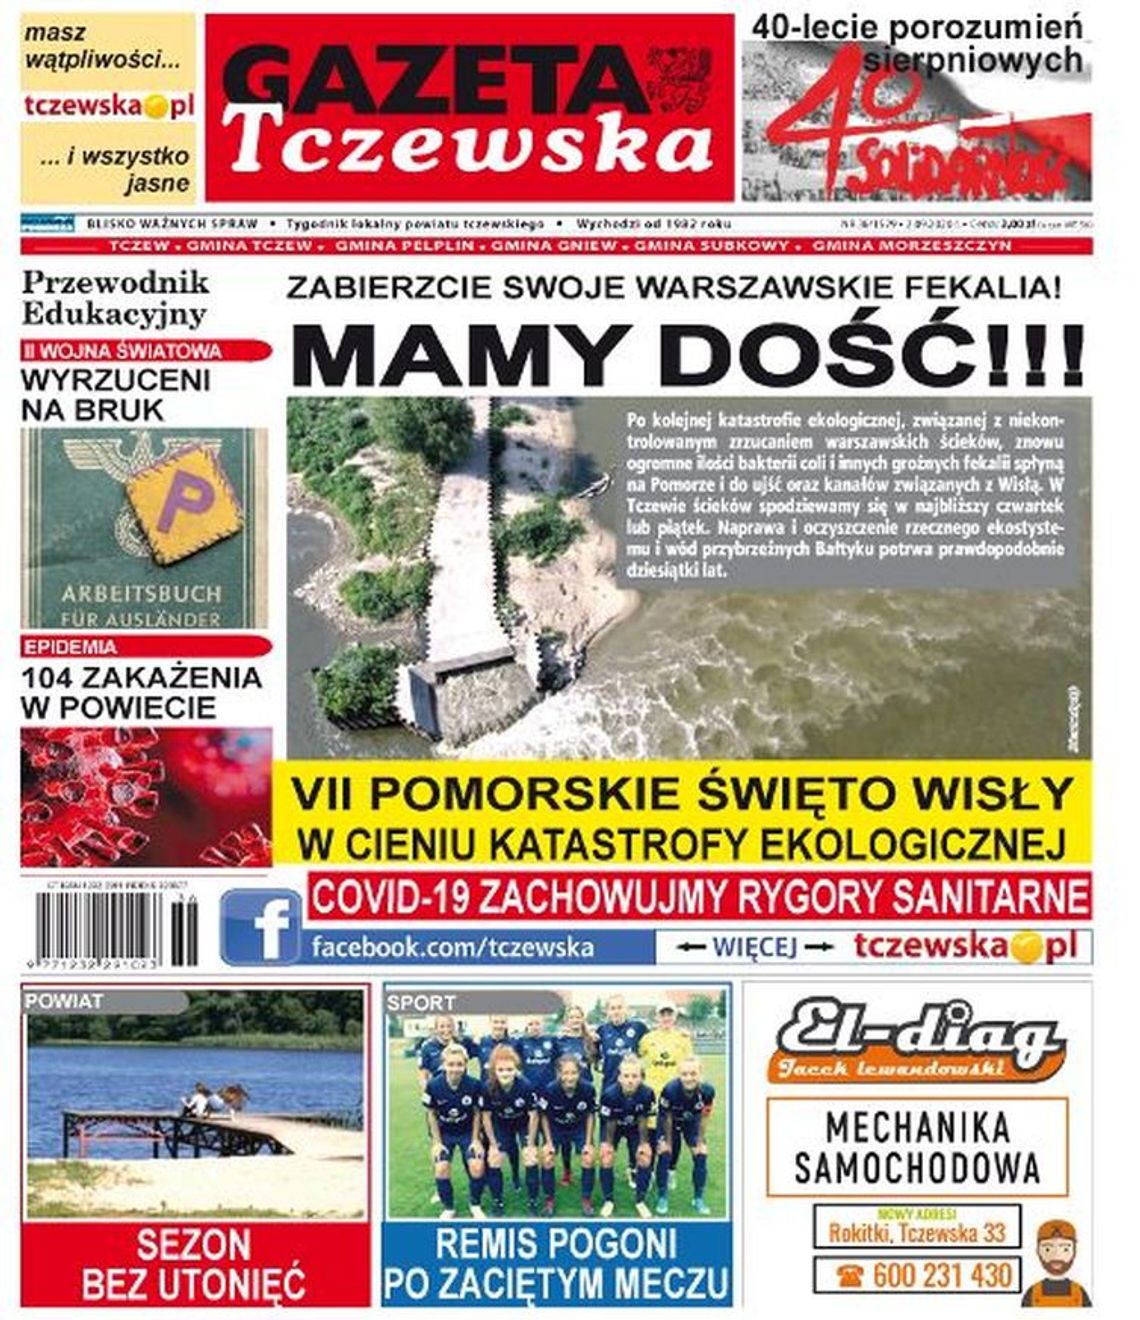 Nowy numer Gazety Tczewskiej już dostępny w sklepach. Co w nim?